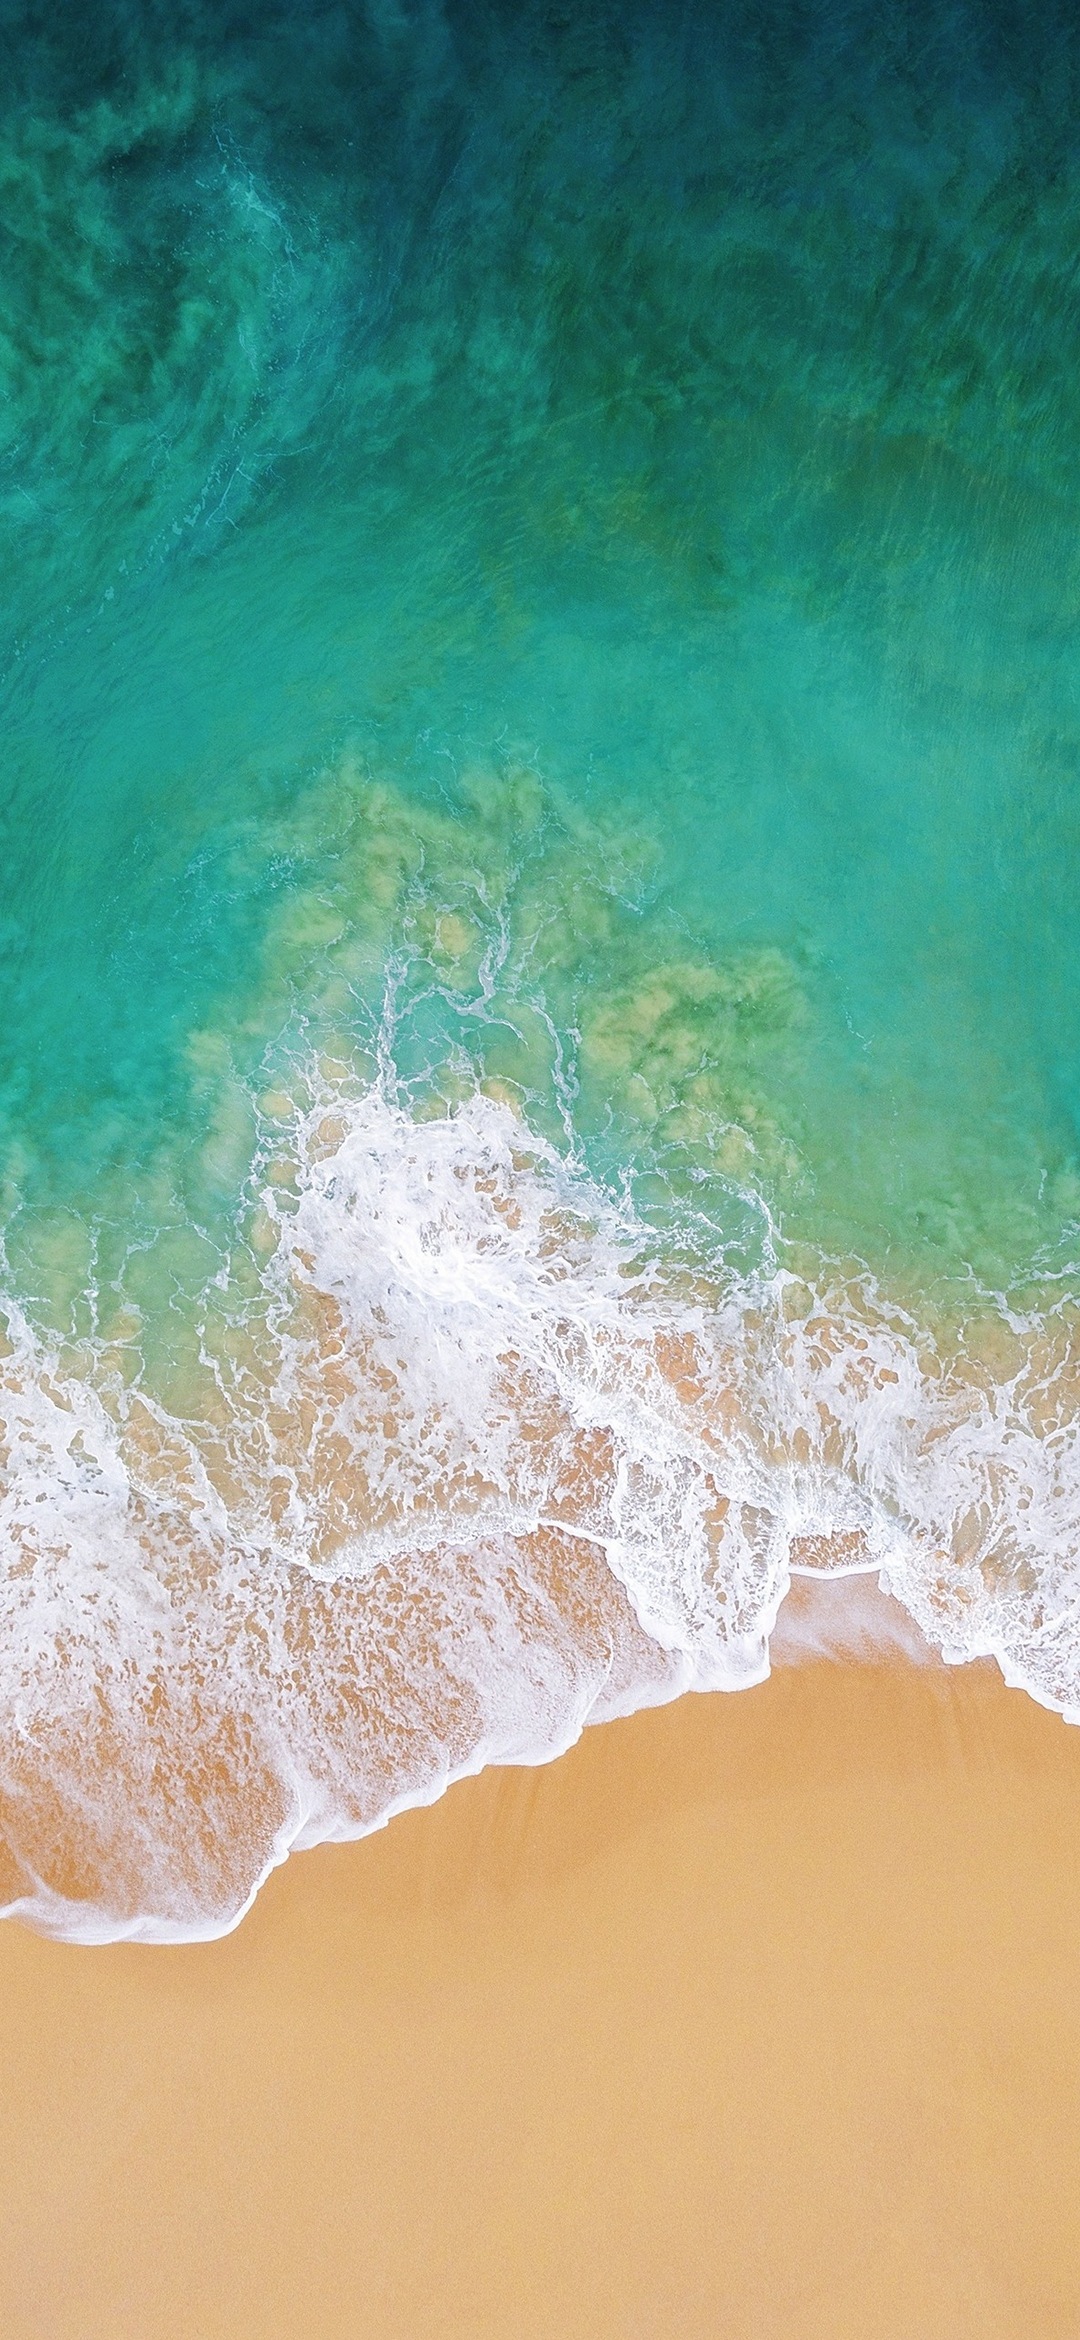 上から見た緑の海と砂浜 Google Pixel 4a Android 壁紙 待ち受け スマラン